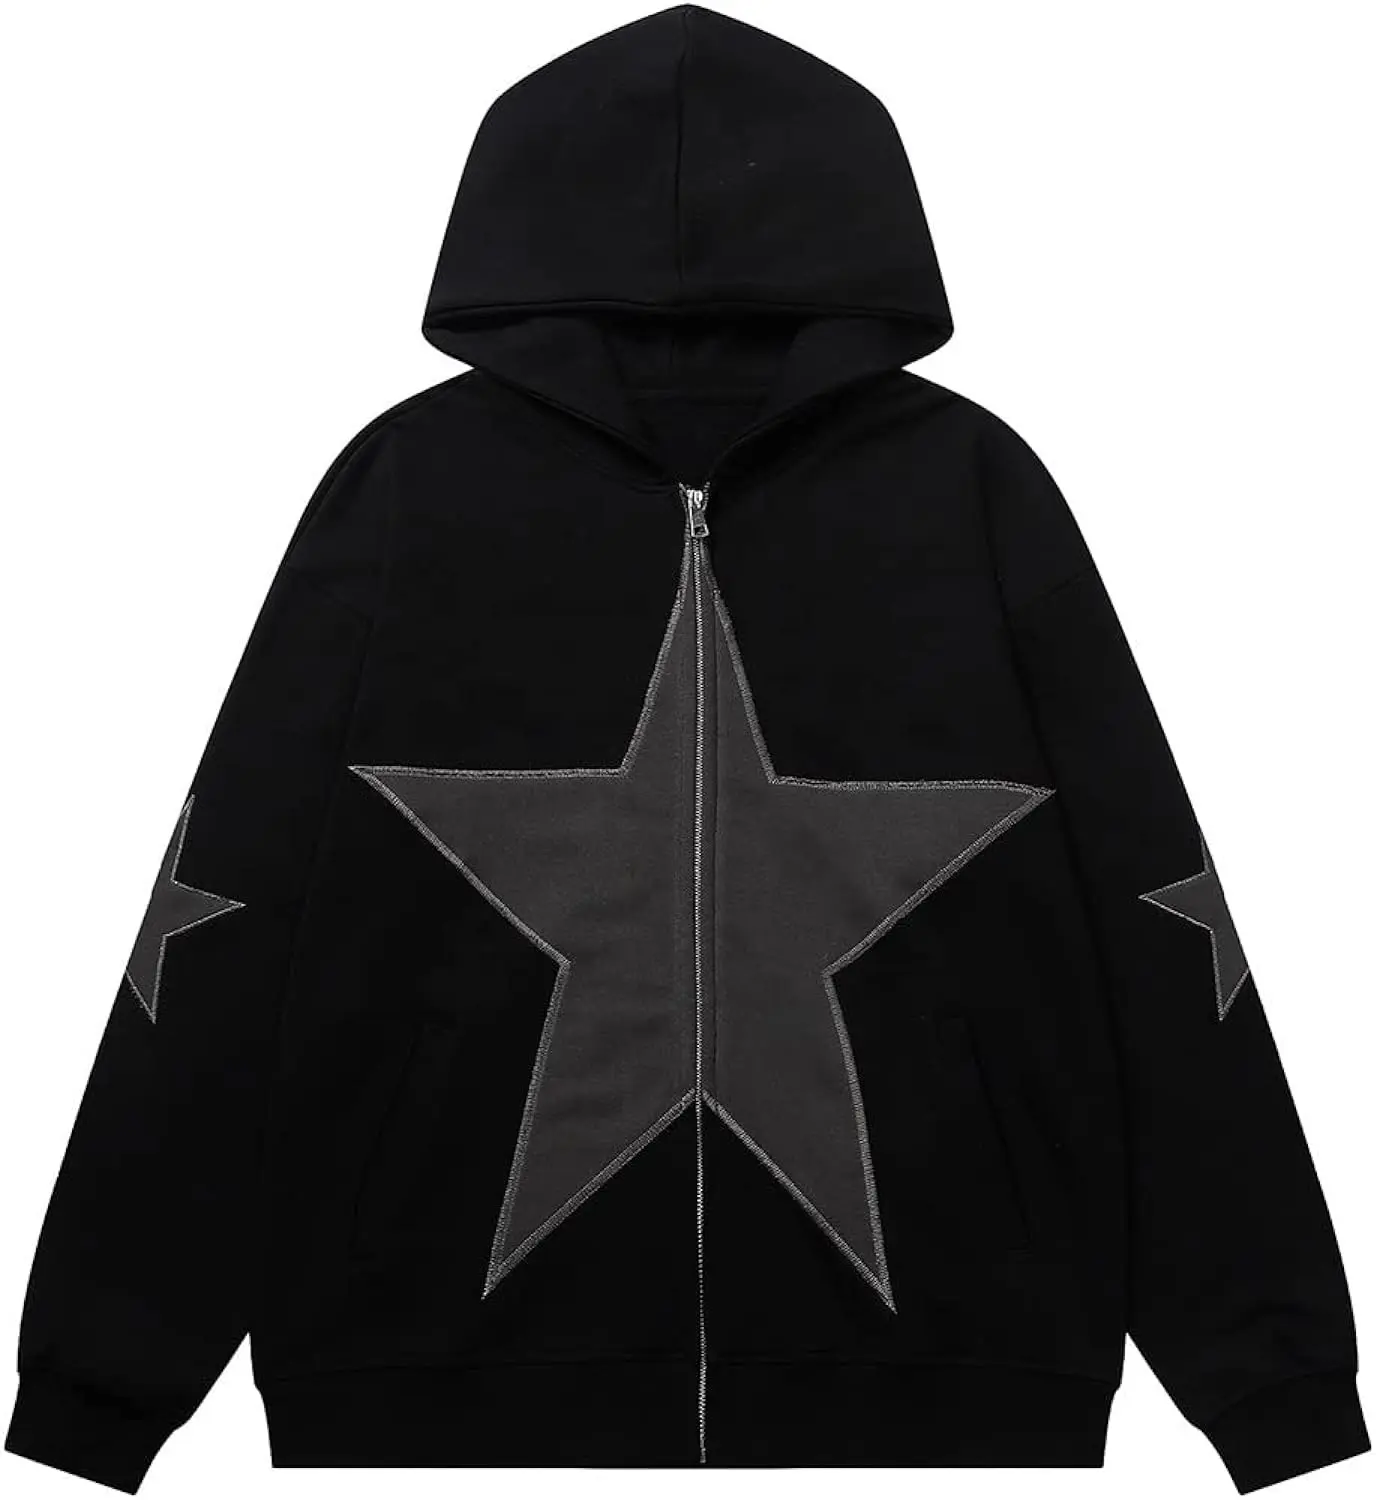 Ön yeni tasarım bir yıldız ile siyah hoodie moda yıldız hoodie işlemeli kapüşonlu eşofman üstü yıldız yama hoodie